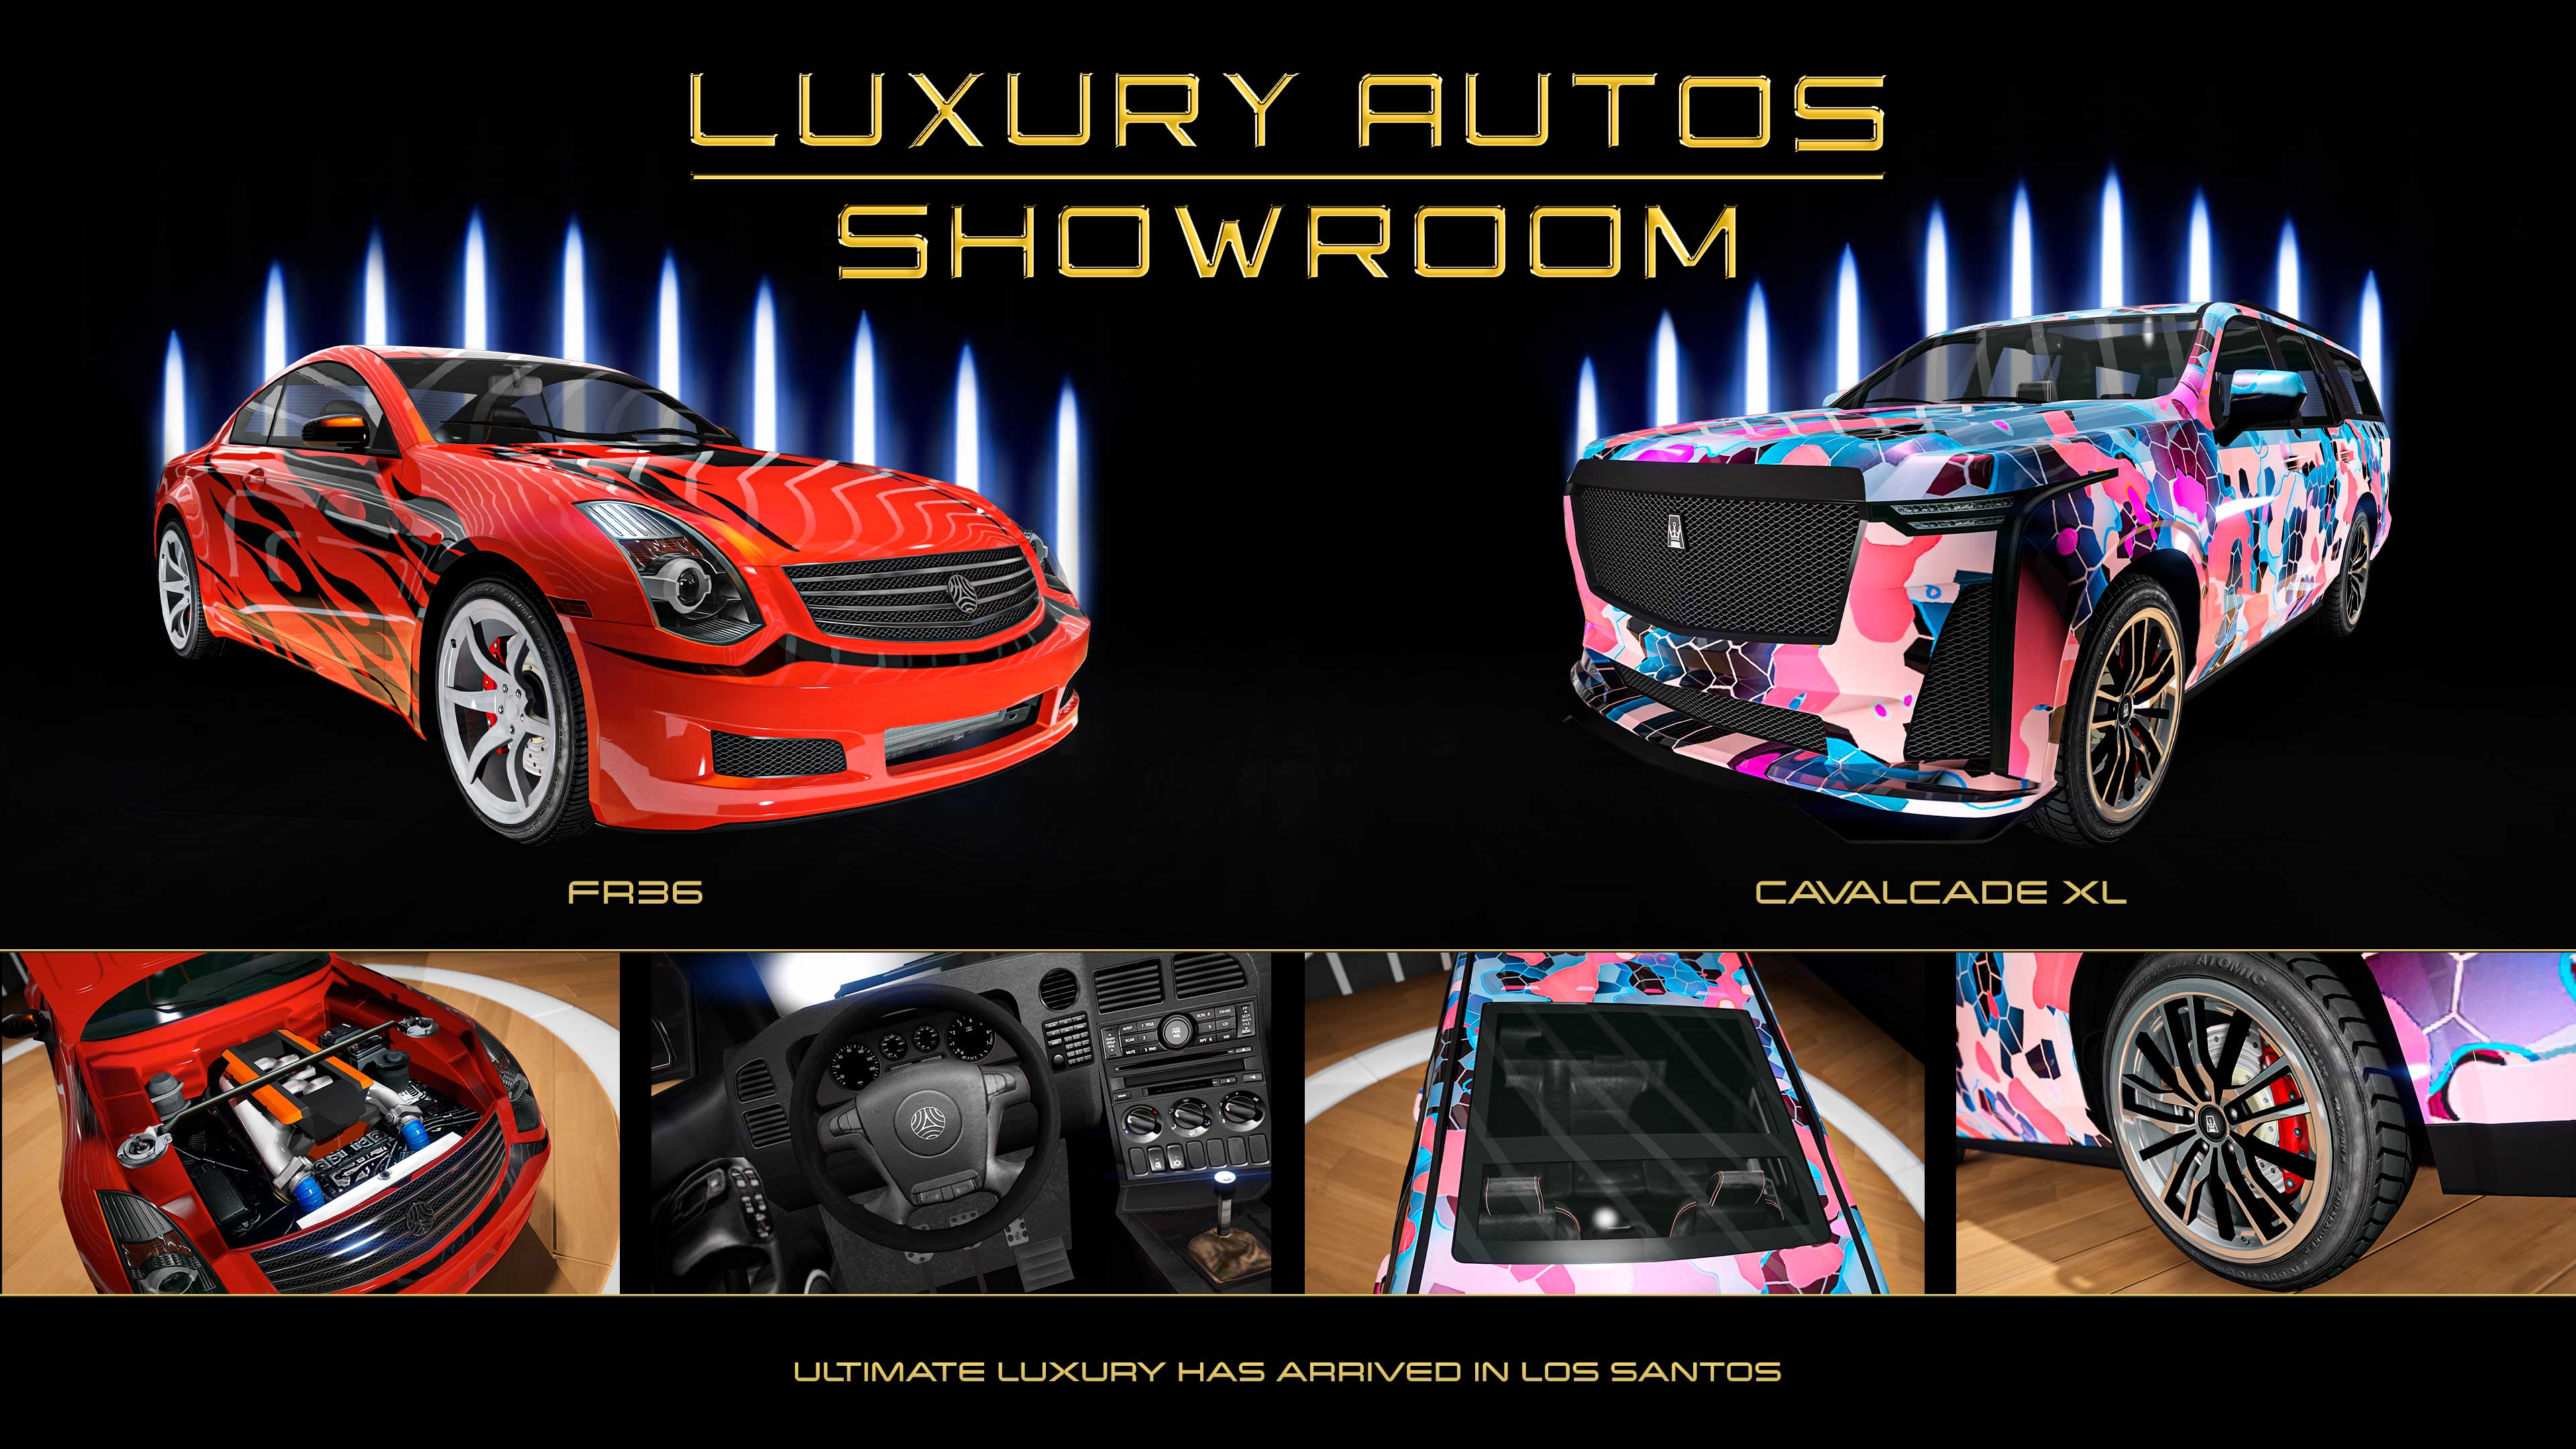 Póster de dos coches del concesionario Luxury Autos. A la izquierda, un Fathom FR36 rojo de tres puertas con la cubierta Llamas negra. A la derecha, un Albany Cavalcade XL de cinco puertas con diseño en mosaico azul, rosa y morado.